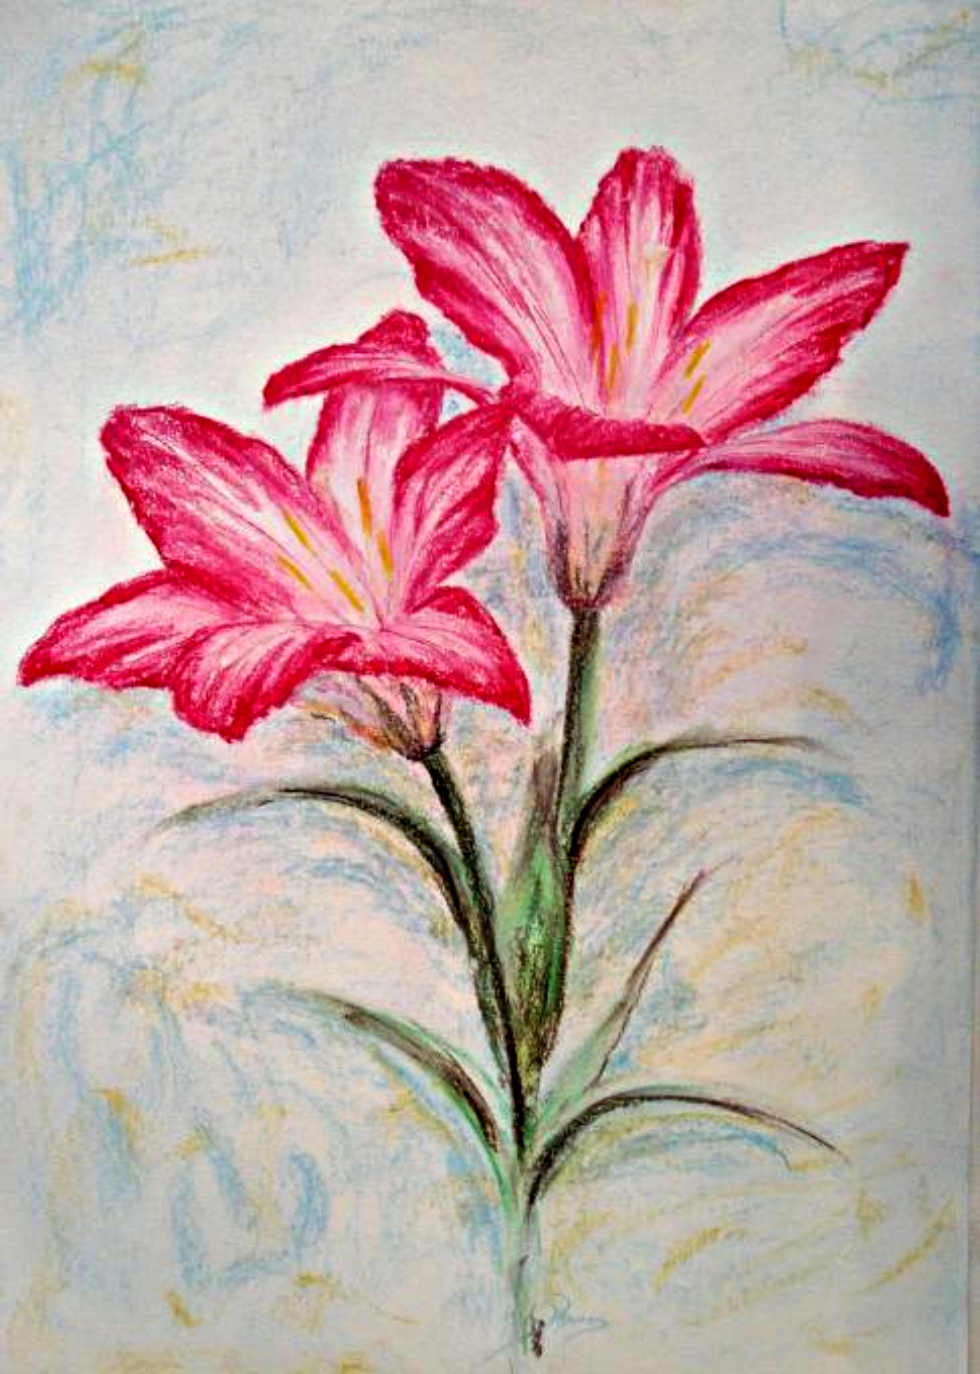 Cách vẽ hoa ly đơn giản: Bạn không phải là một họa sĩ chuyên nghiệp nhưng vẫn muốn có thể tự tay vẽ hình hoa ly đẹp? Hãy khám phá cách vẽ hoa ly đơn giản nhất và dễ dàng nhất mà không cần bất kỳ kỹ năng đặc biệt nào. Trải nghiệm niềm vui sáng tạo cùng nghệ thuật vẽ hoa ly.